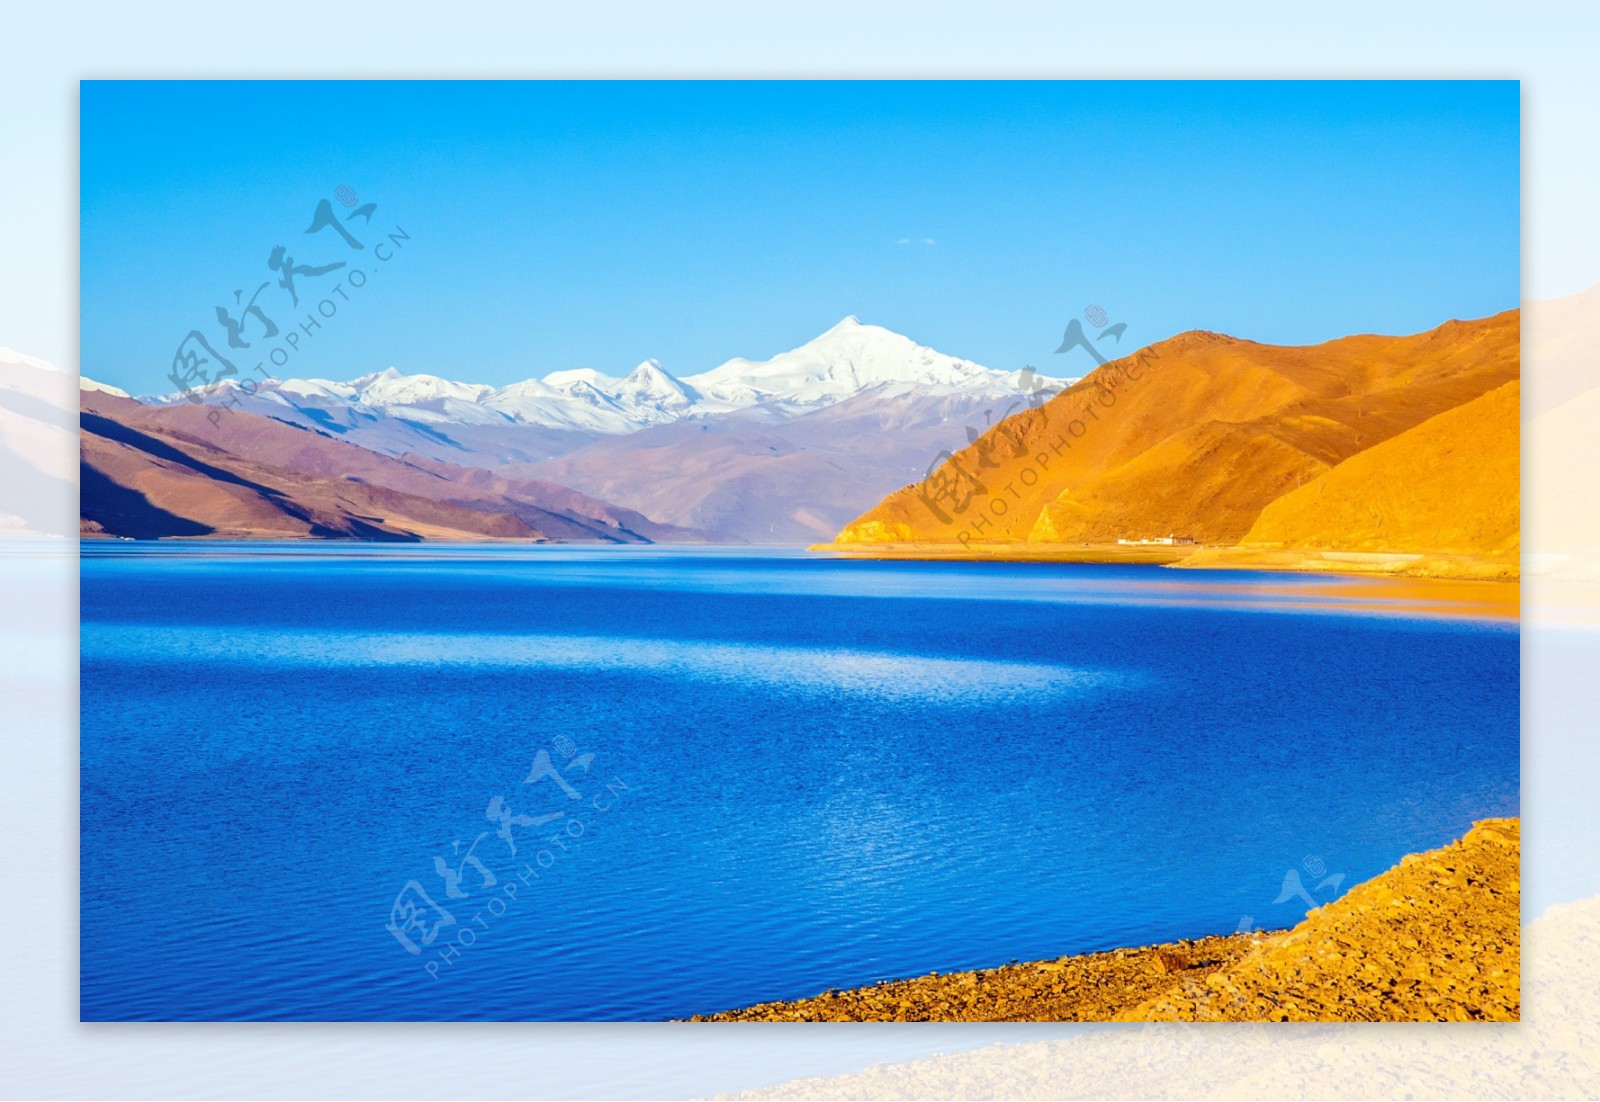 西藏湖泊风景图片